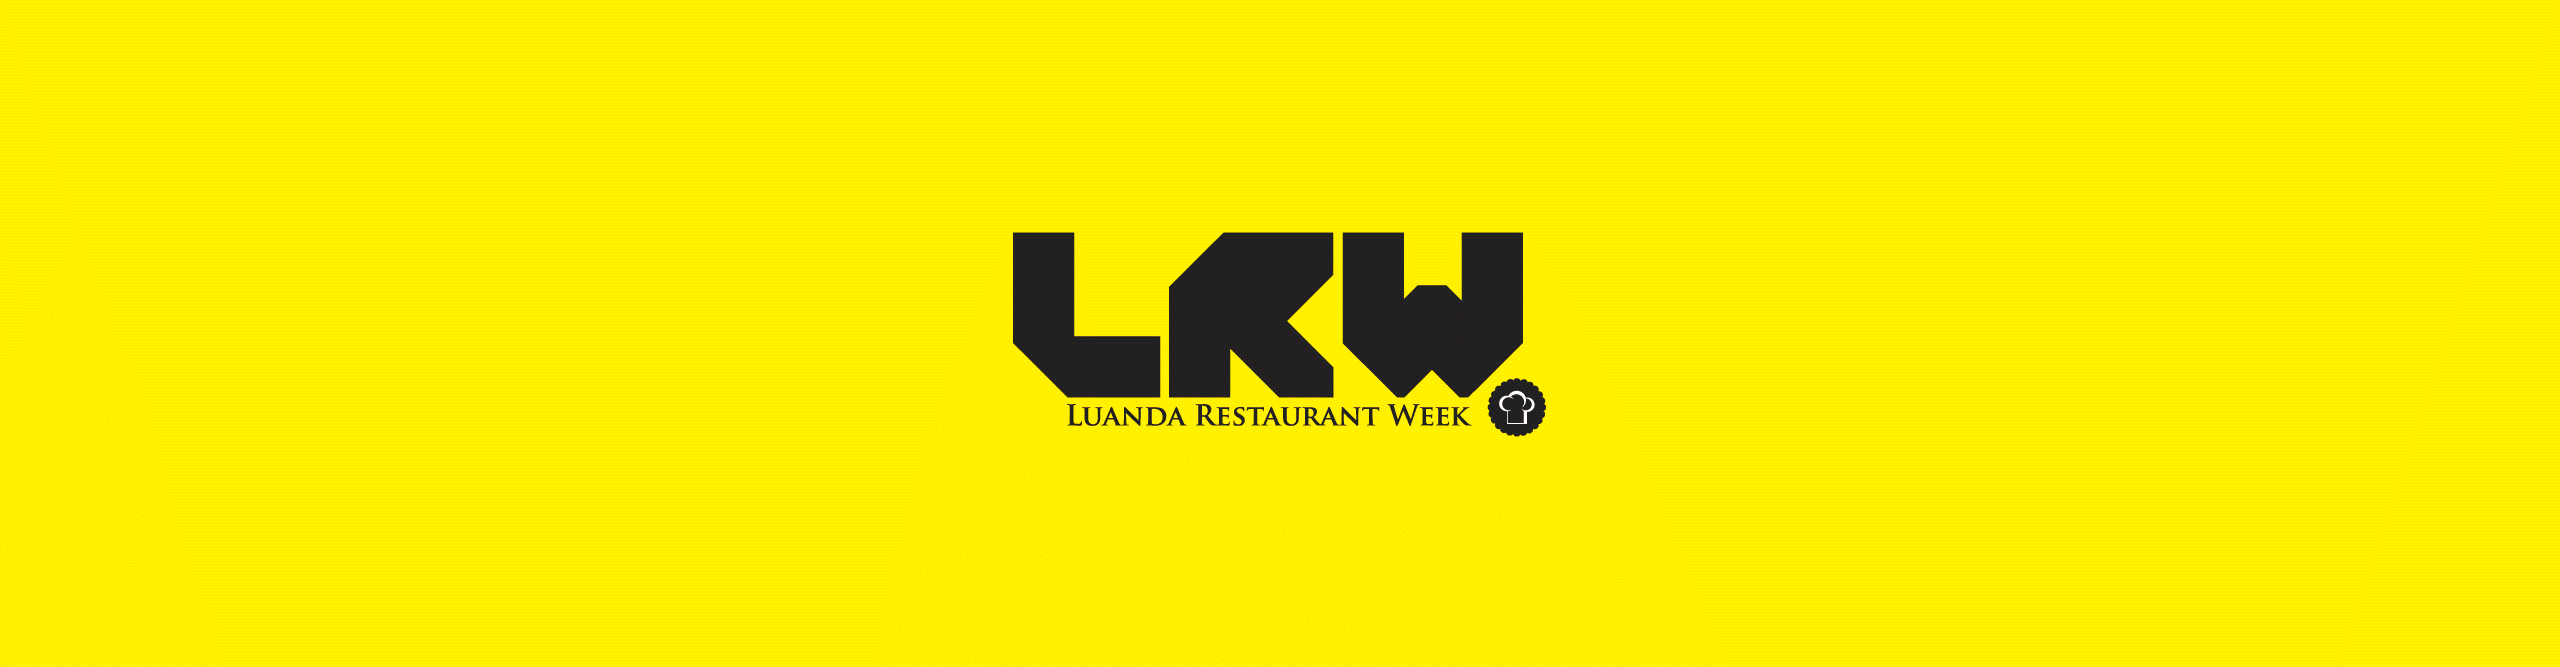 LRW_ LUANDA RESTAURANT WEEK